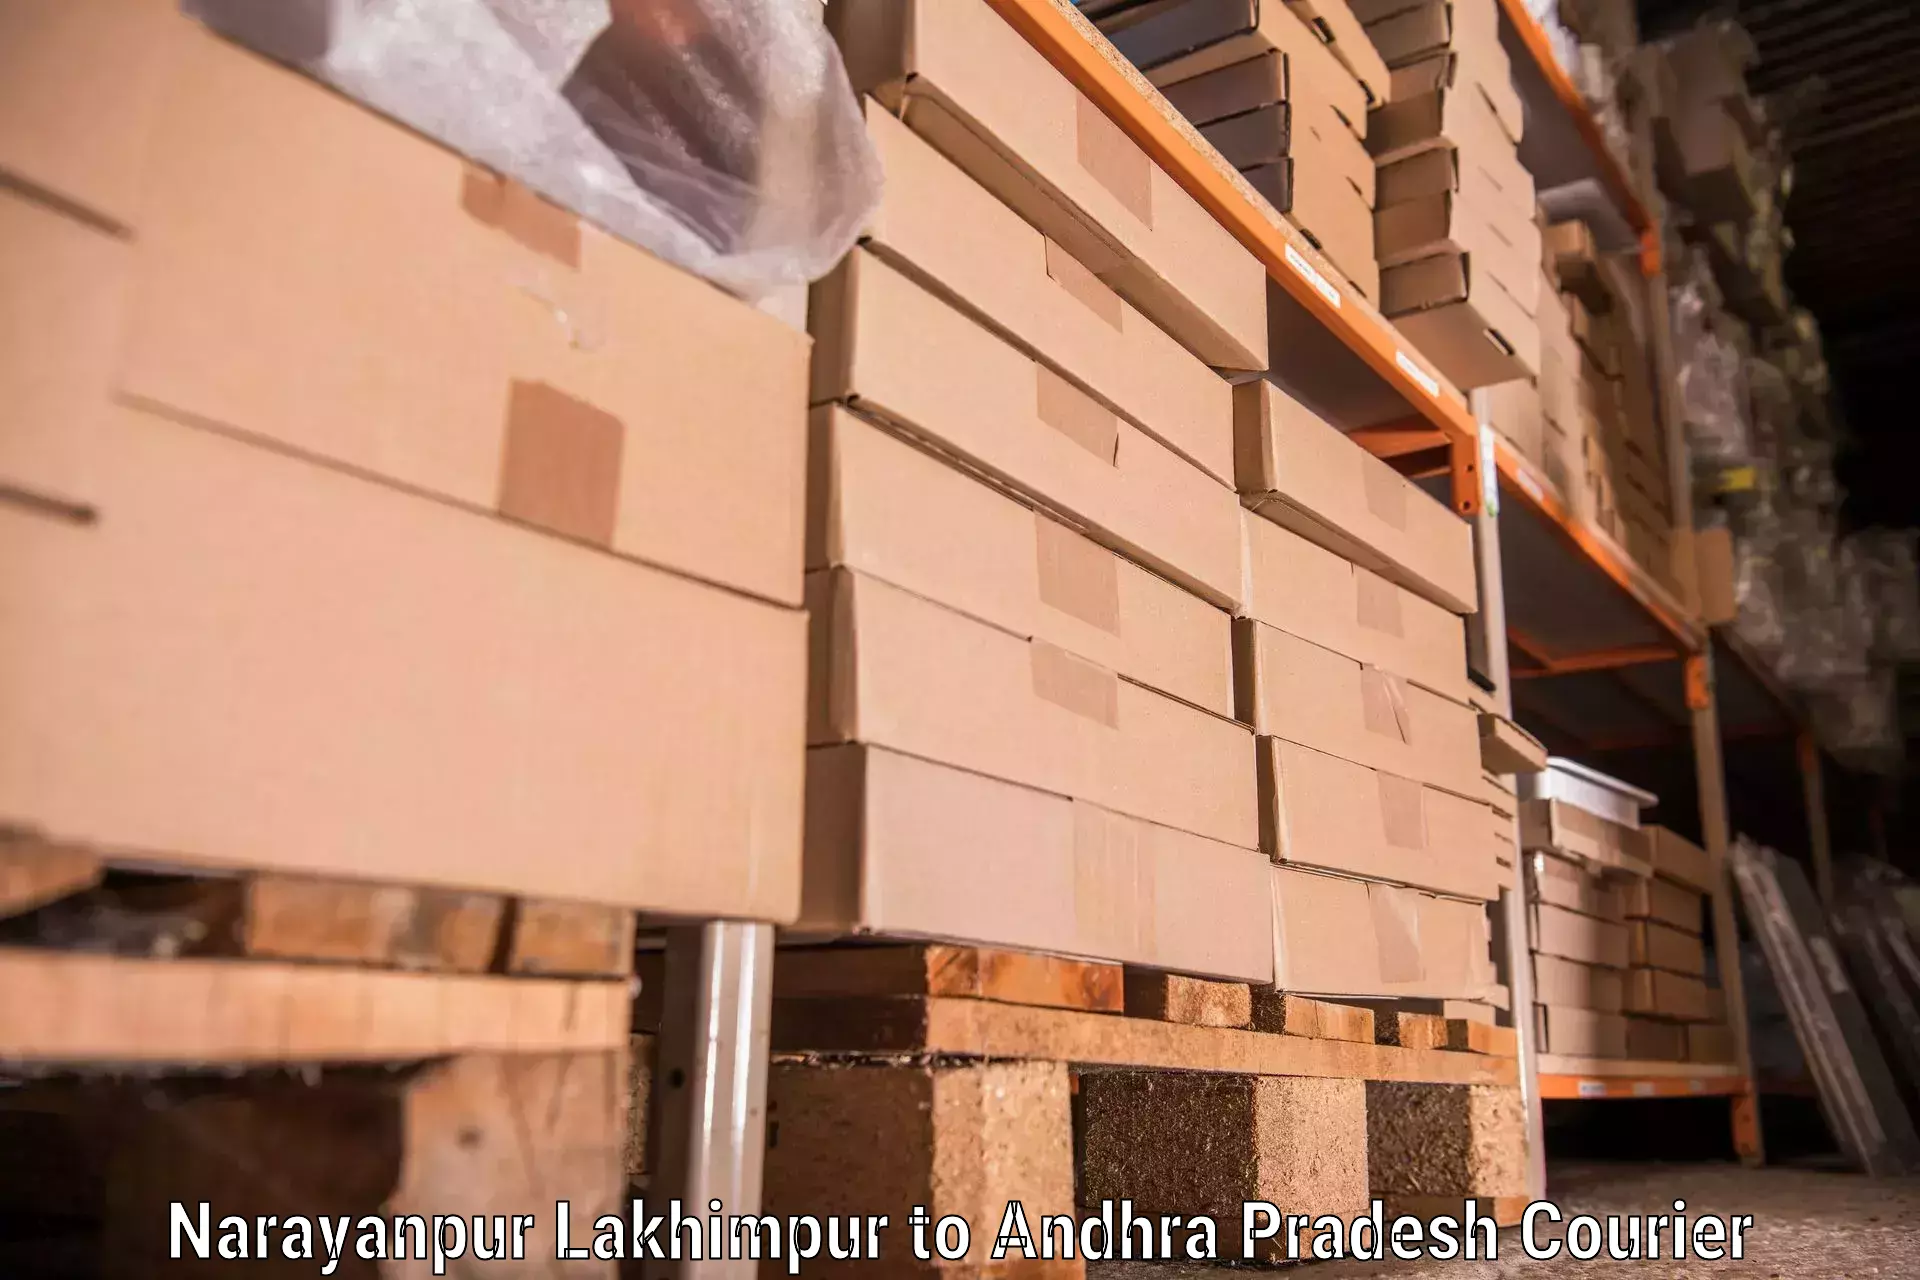 Furniture transport experts Narayanpur Lakhimpur to Podili